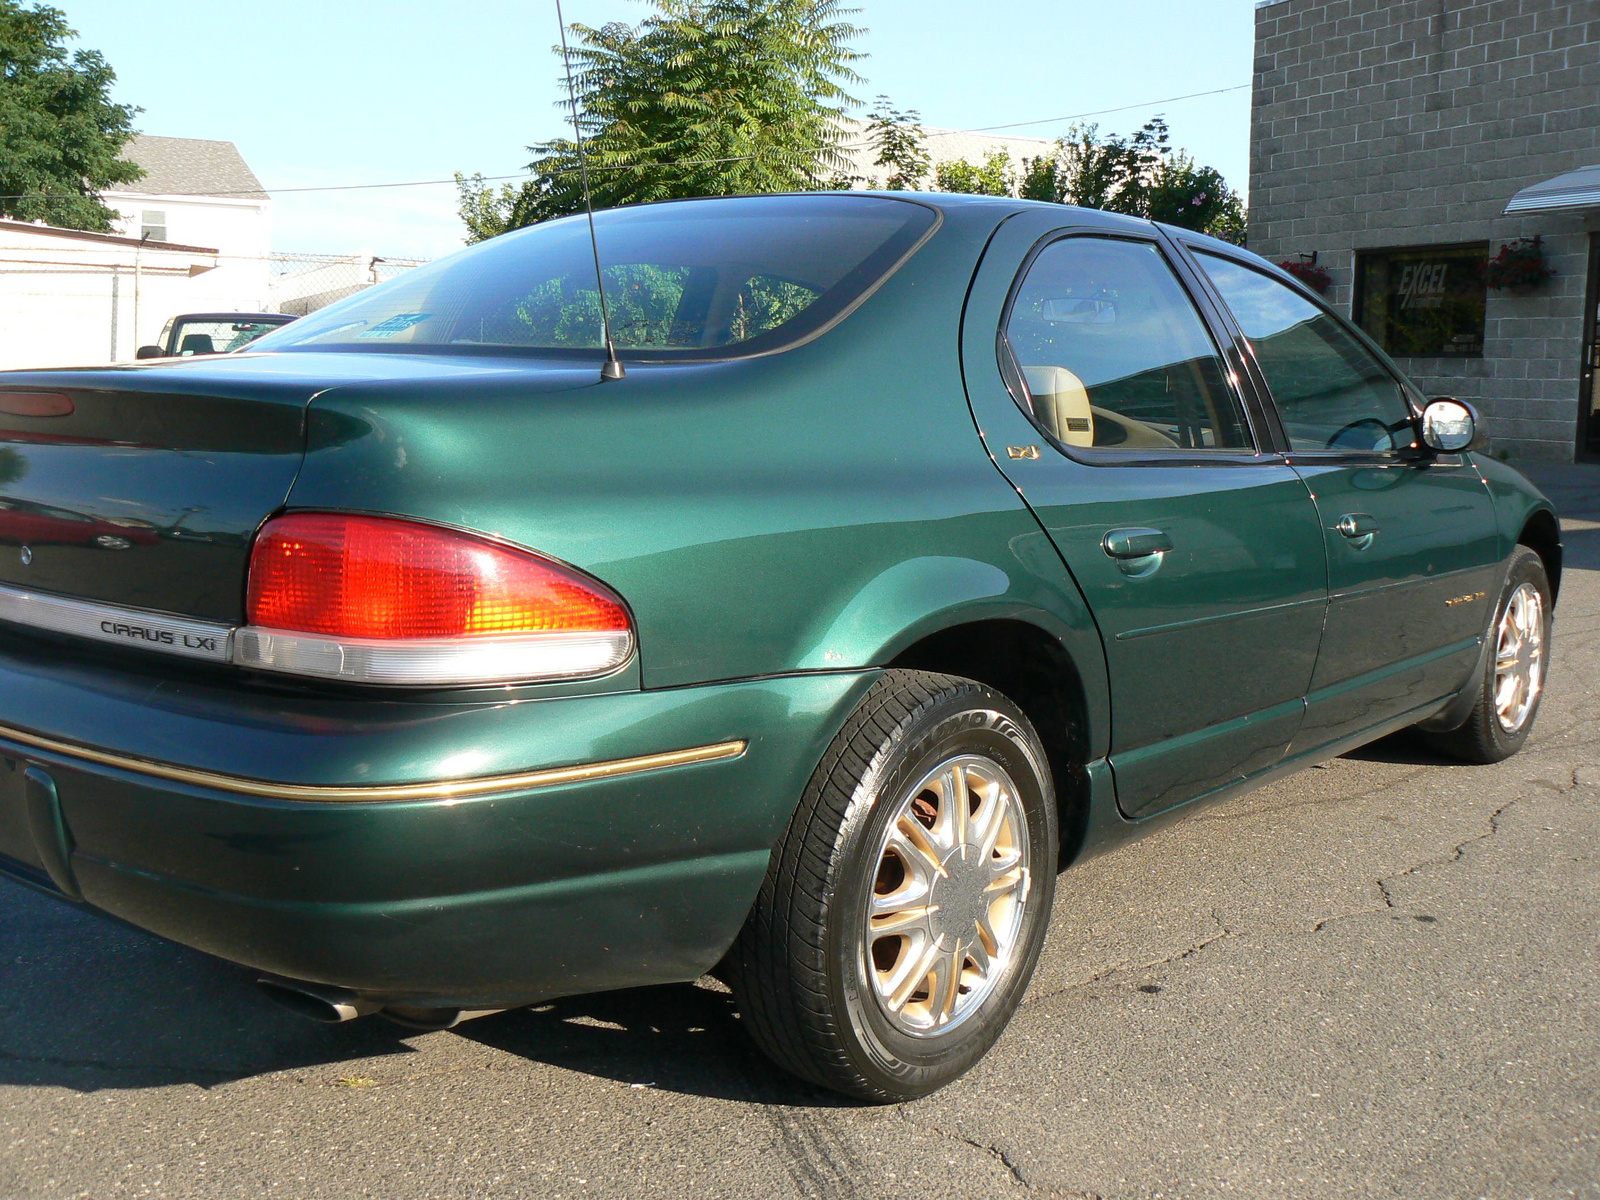 Chrysler cirrus 1998 problems #3